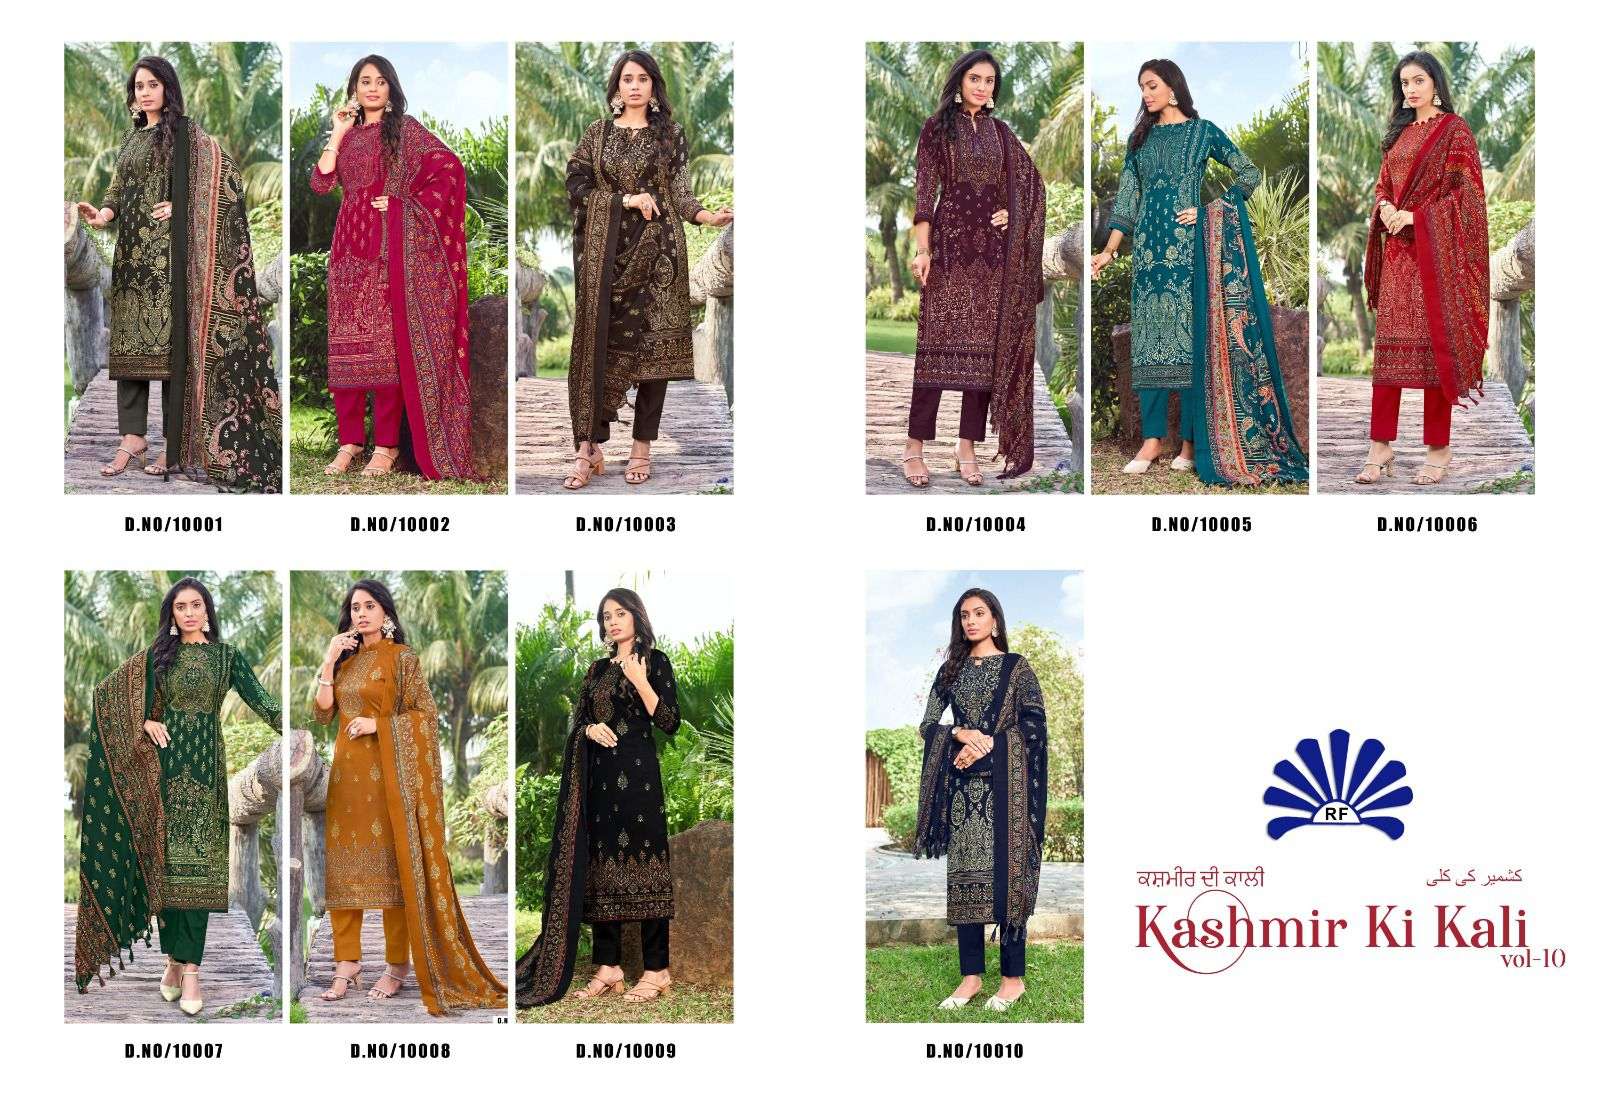 radha fab kashmir ki kali vol-10 10001-10010 series latest designer salwar kameez wholesaler surat gujarat